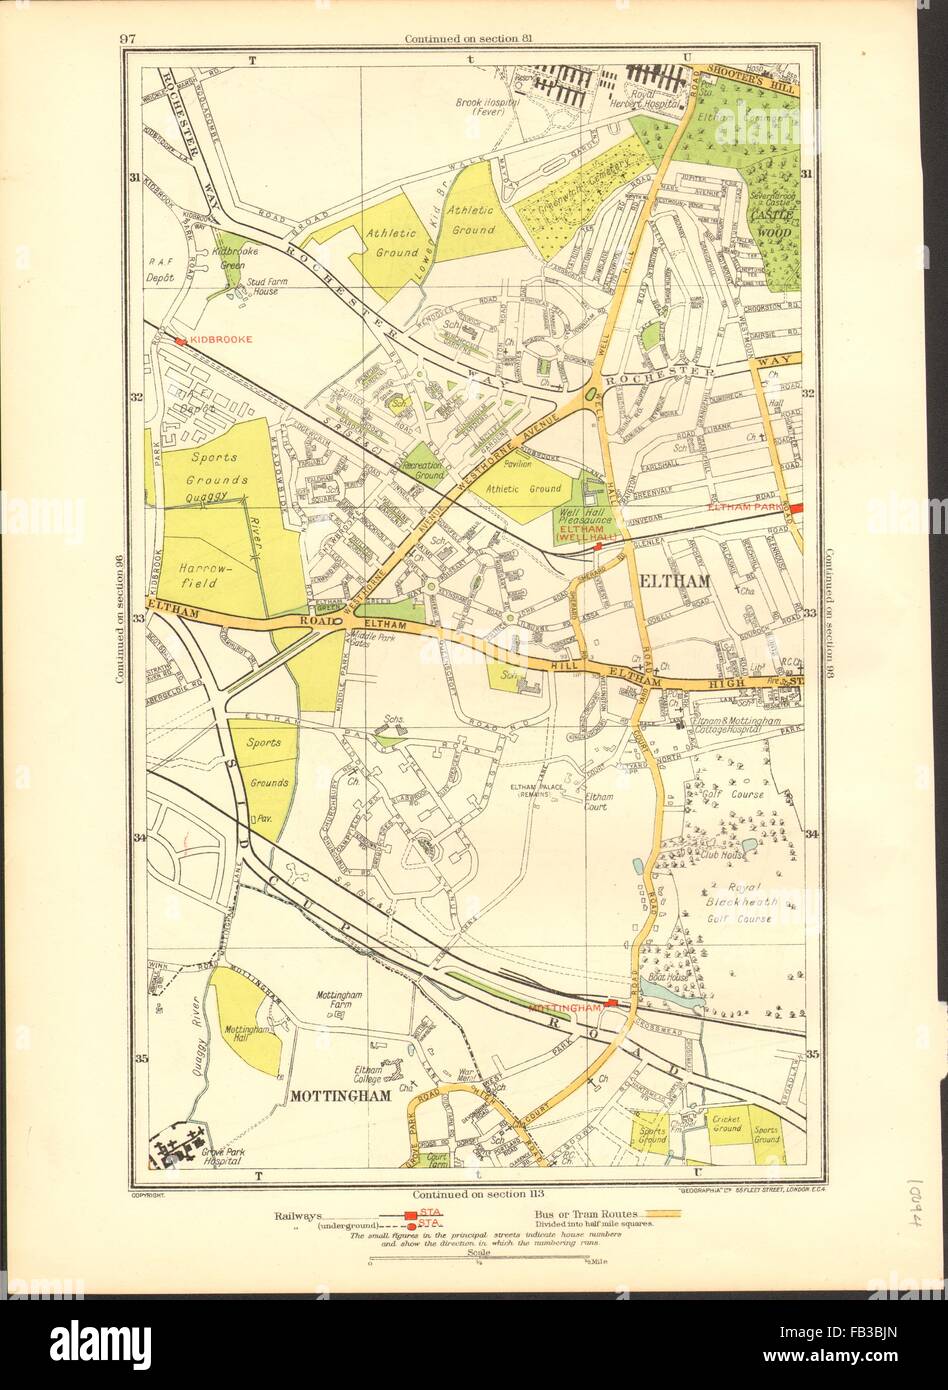 Yvoir : Mottingham, Kidbrooke, Shooter's Hill, Eltham Park, parc de l'avertisseur sonore, 1937 map Banque D'Images